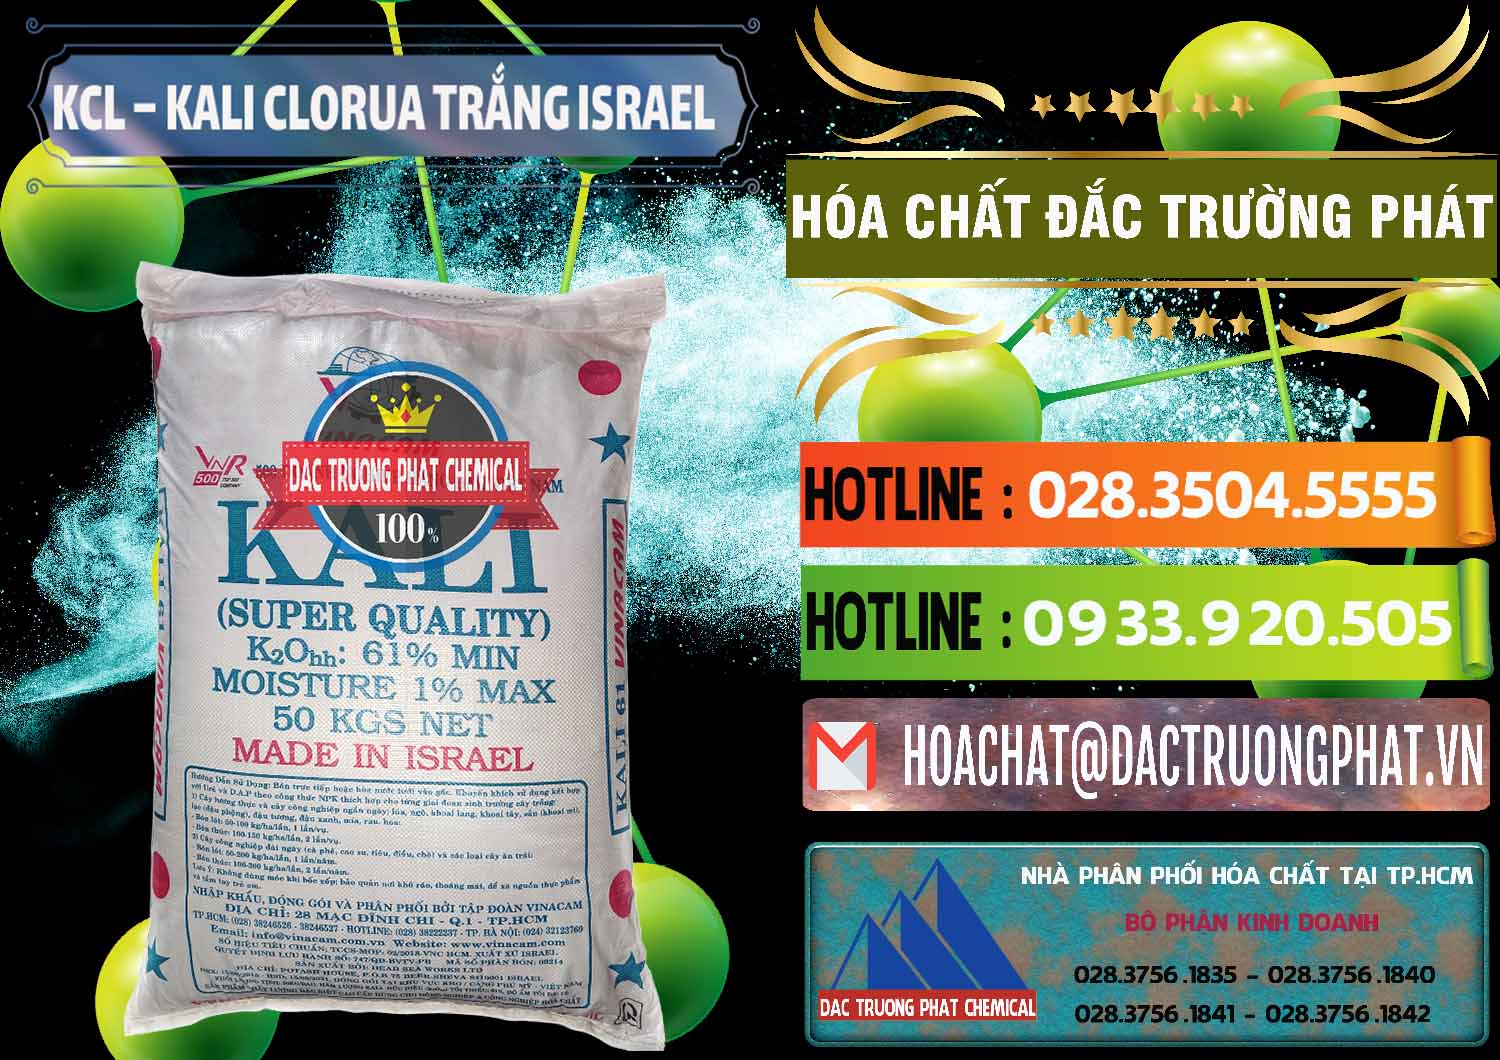 Công ty bán - cung ứng KCL – Kali Clorua Trắng Israel - 0087 - Nhà phân phối _ cung cấp hóa chất tại TP.HCM - cungcaphoachat.com.vn